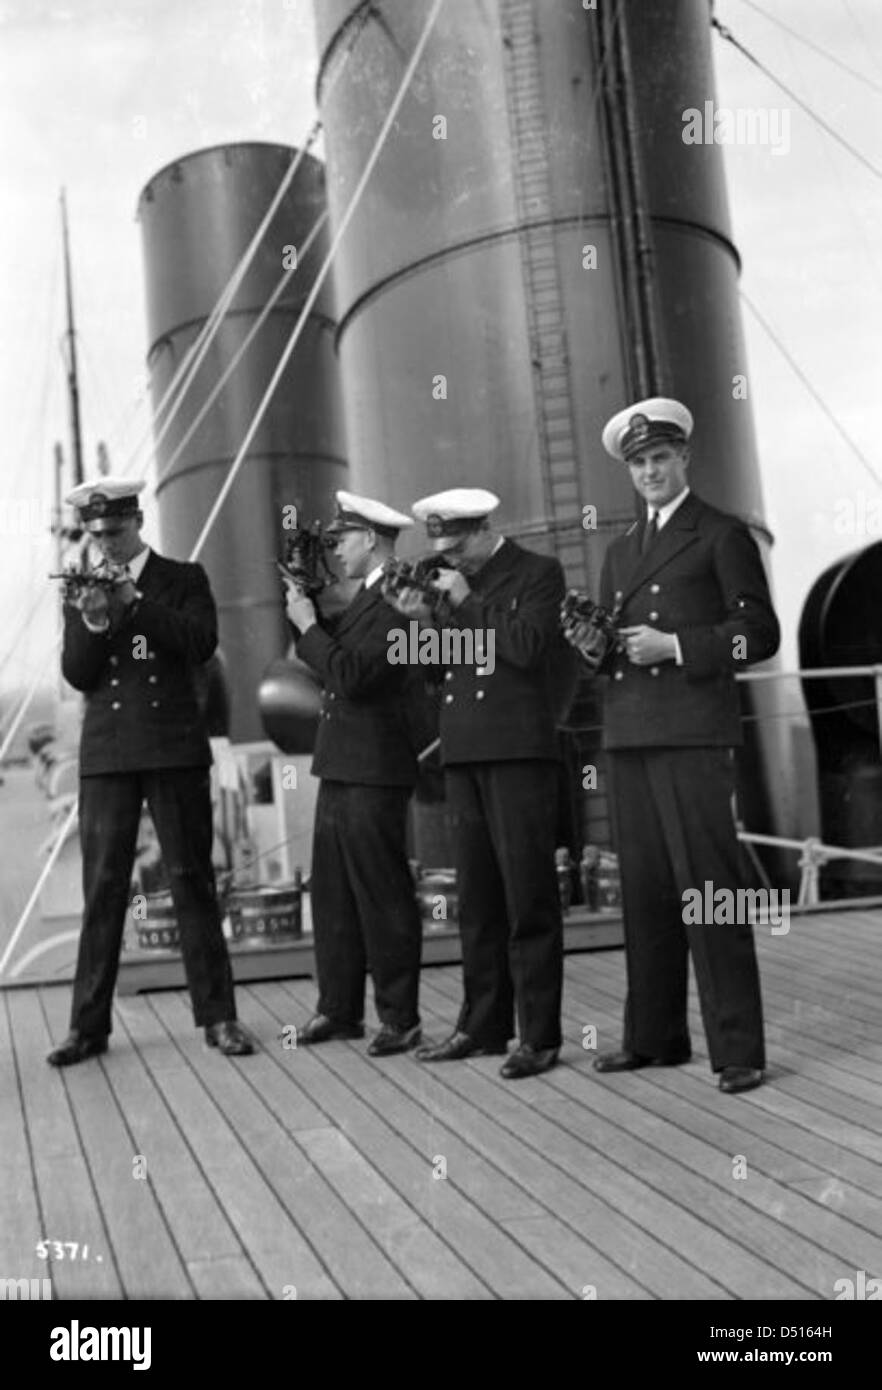 4 P & O cadets du 'Vice-roi de l'inde' sur le côté tribord du pont de passerelle avec leurs sextants Banque D'Images